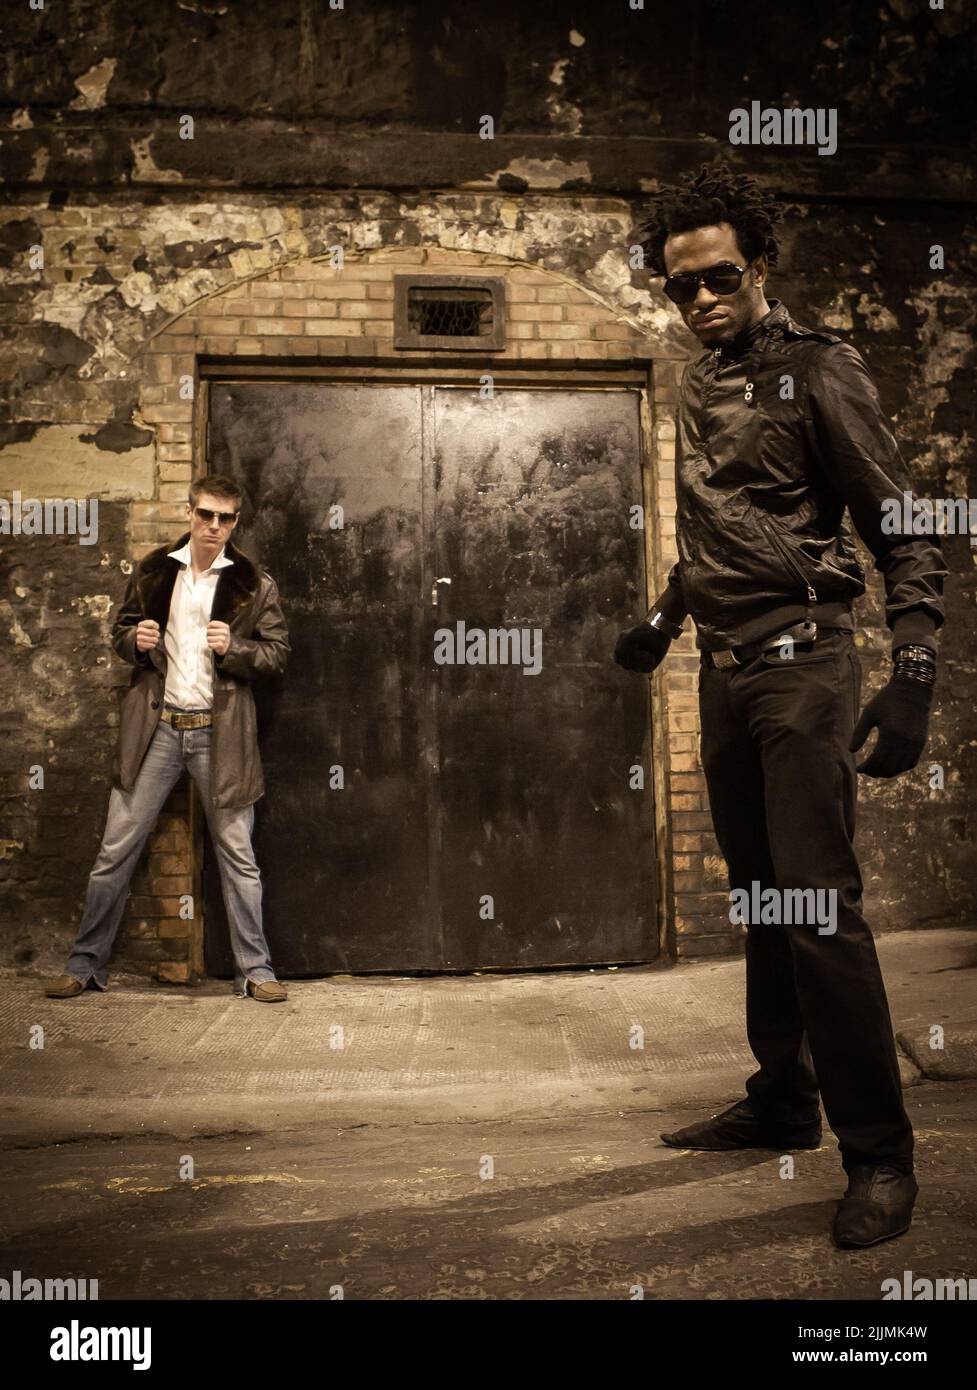 Türsicherheit. Ein Paar Sicherheitskräfte im Nachtclub, die an einem anonymen Eingang in einer städtischen Umgebung Wache halten. Aus einer Serie mit den gleichen Modellen. Stockfoto